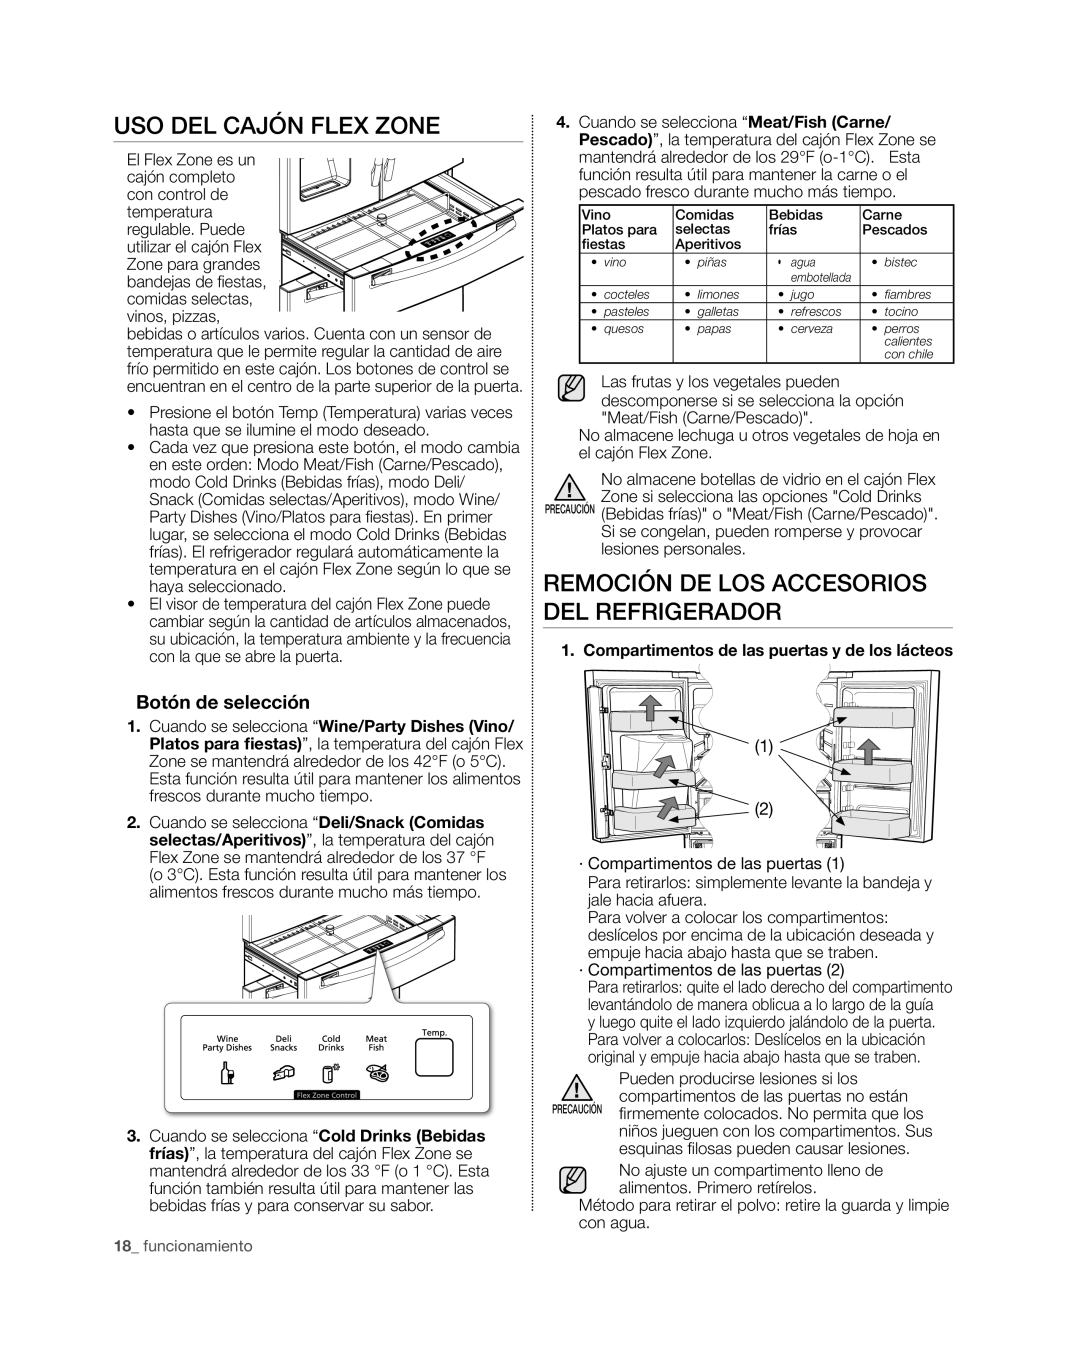 Samsung RF4267HA user manual Uso del cajón Flex Zone, Remoción de los accesorios del refrigerador, Botón de selección 